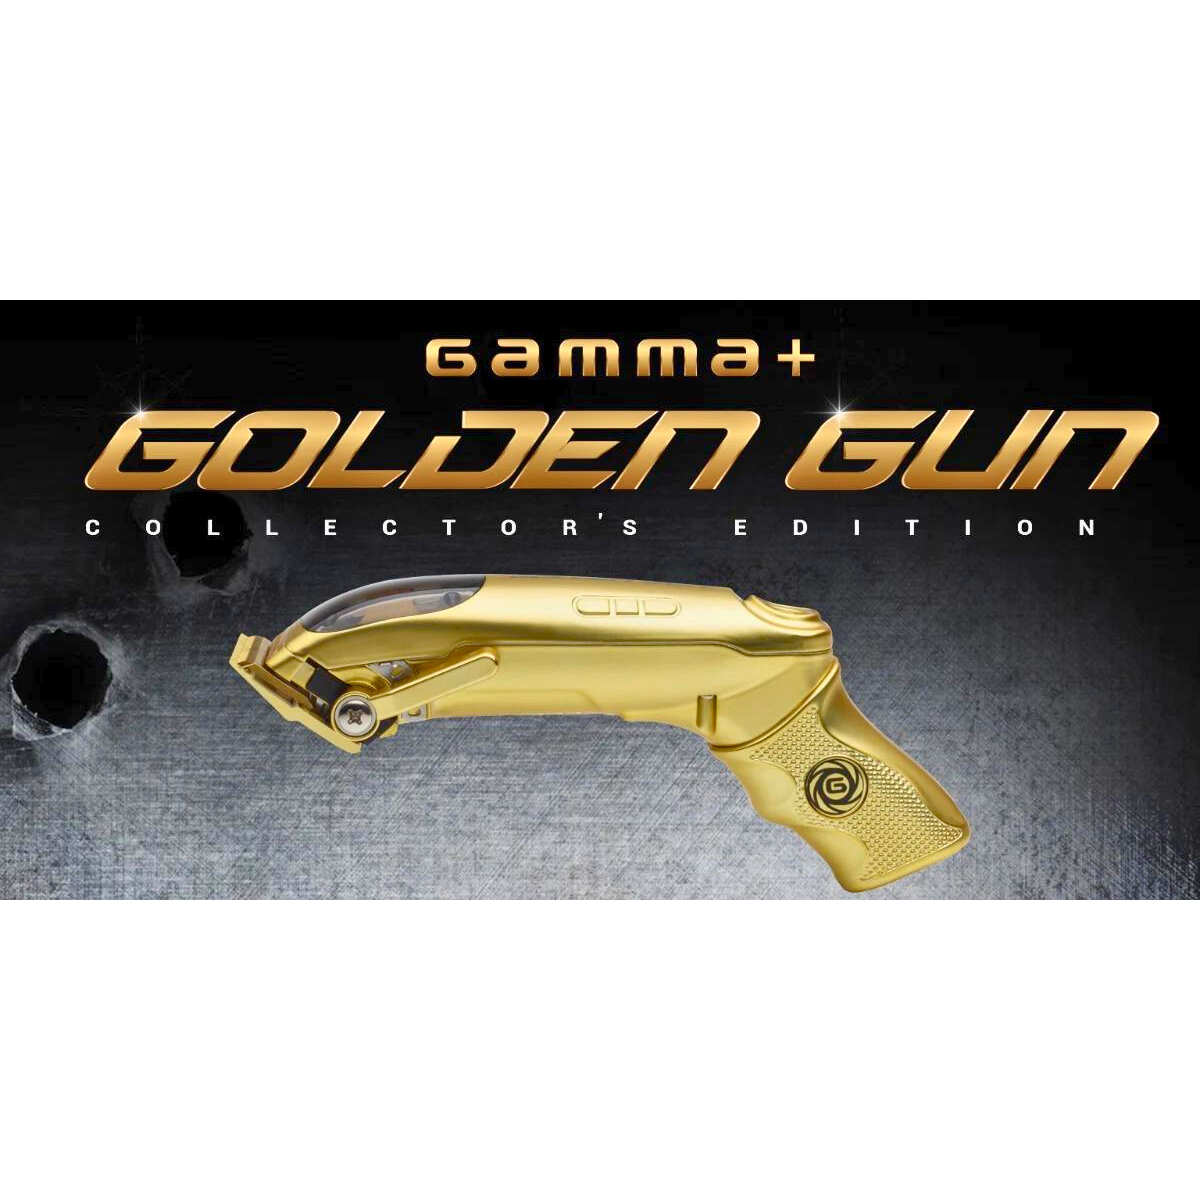 מכונת תספורת GOLDEN GUN מהדורה מוגבלת בעיצוב מרהיב GAMMA PIU גאמה פיו